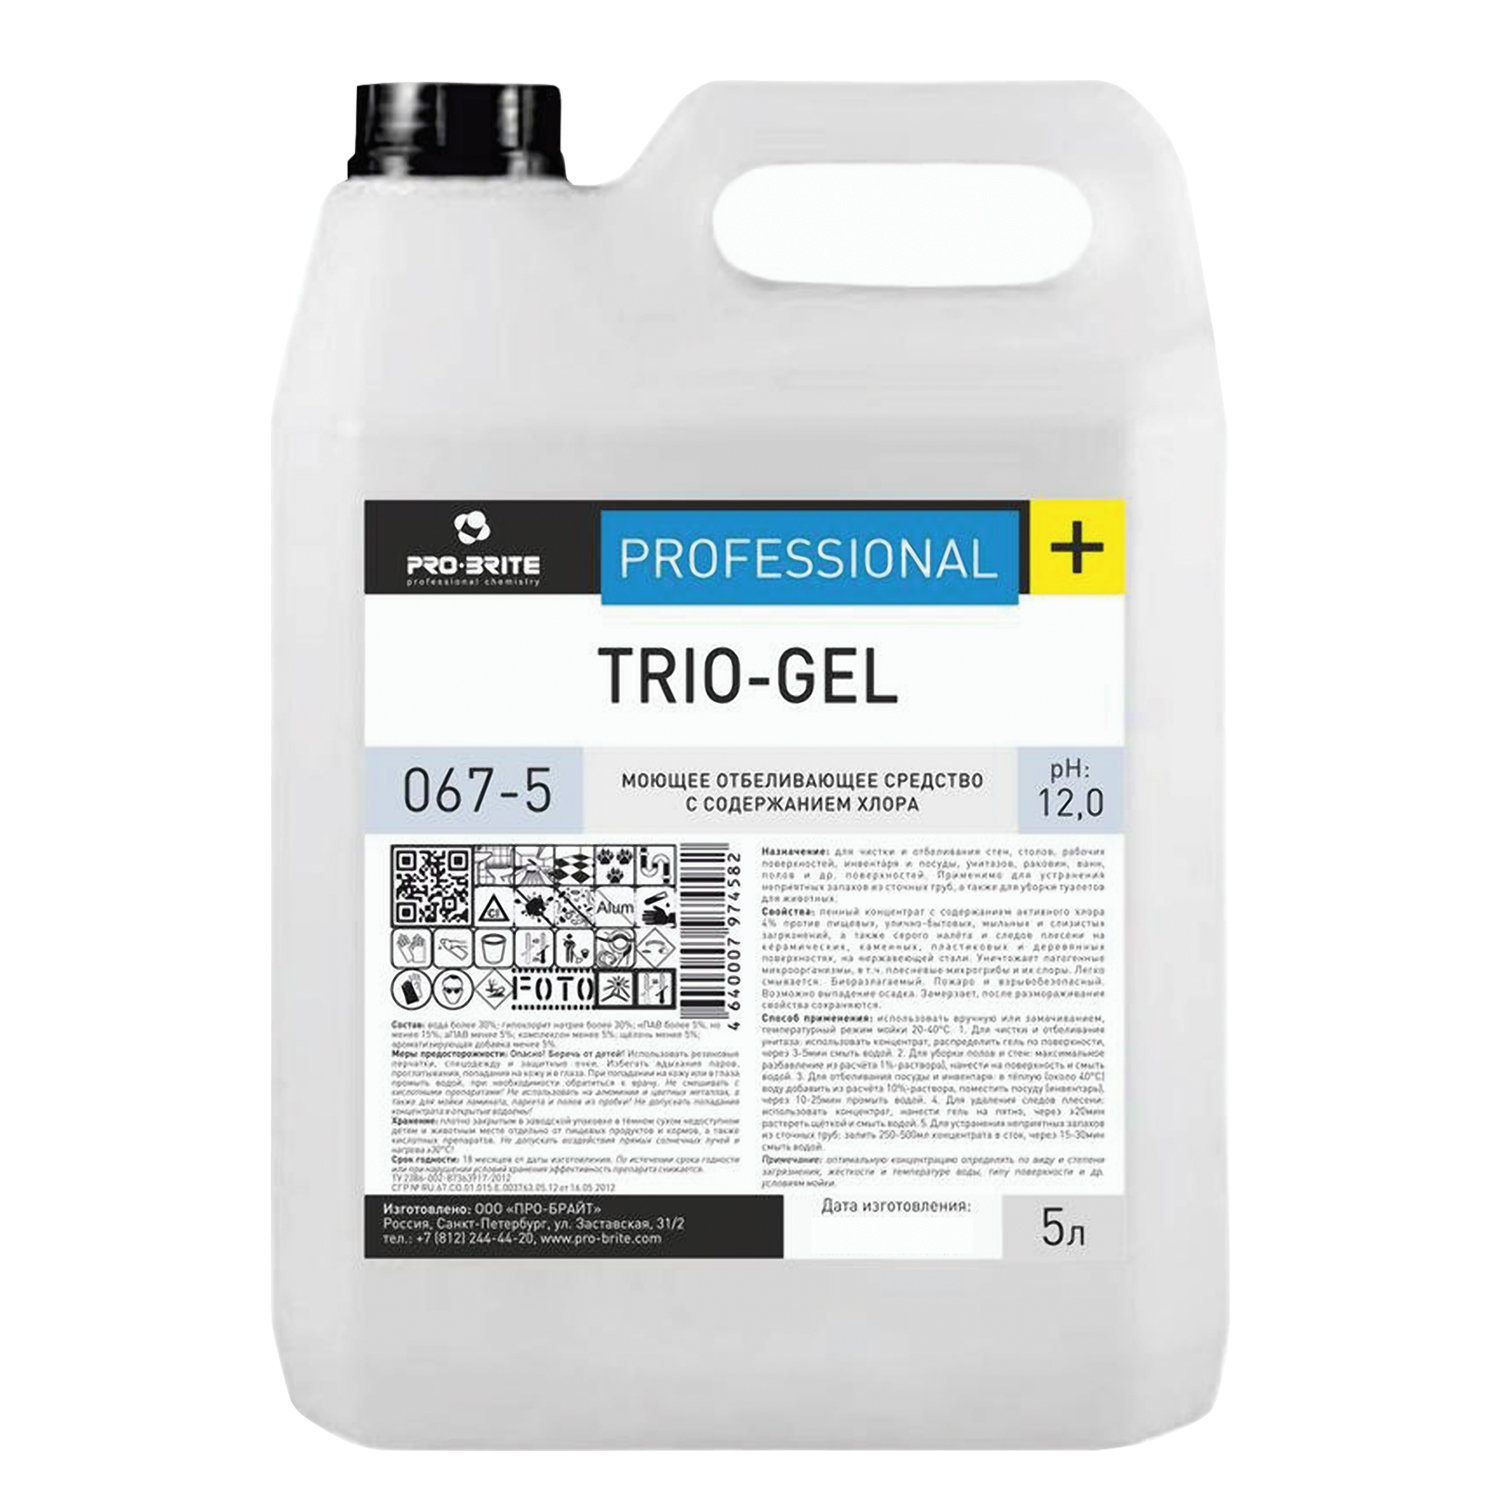 фото Средство моющее pro-brite trio-gel, с отбеливающим эффектом, концентрат, 5 л